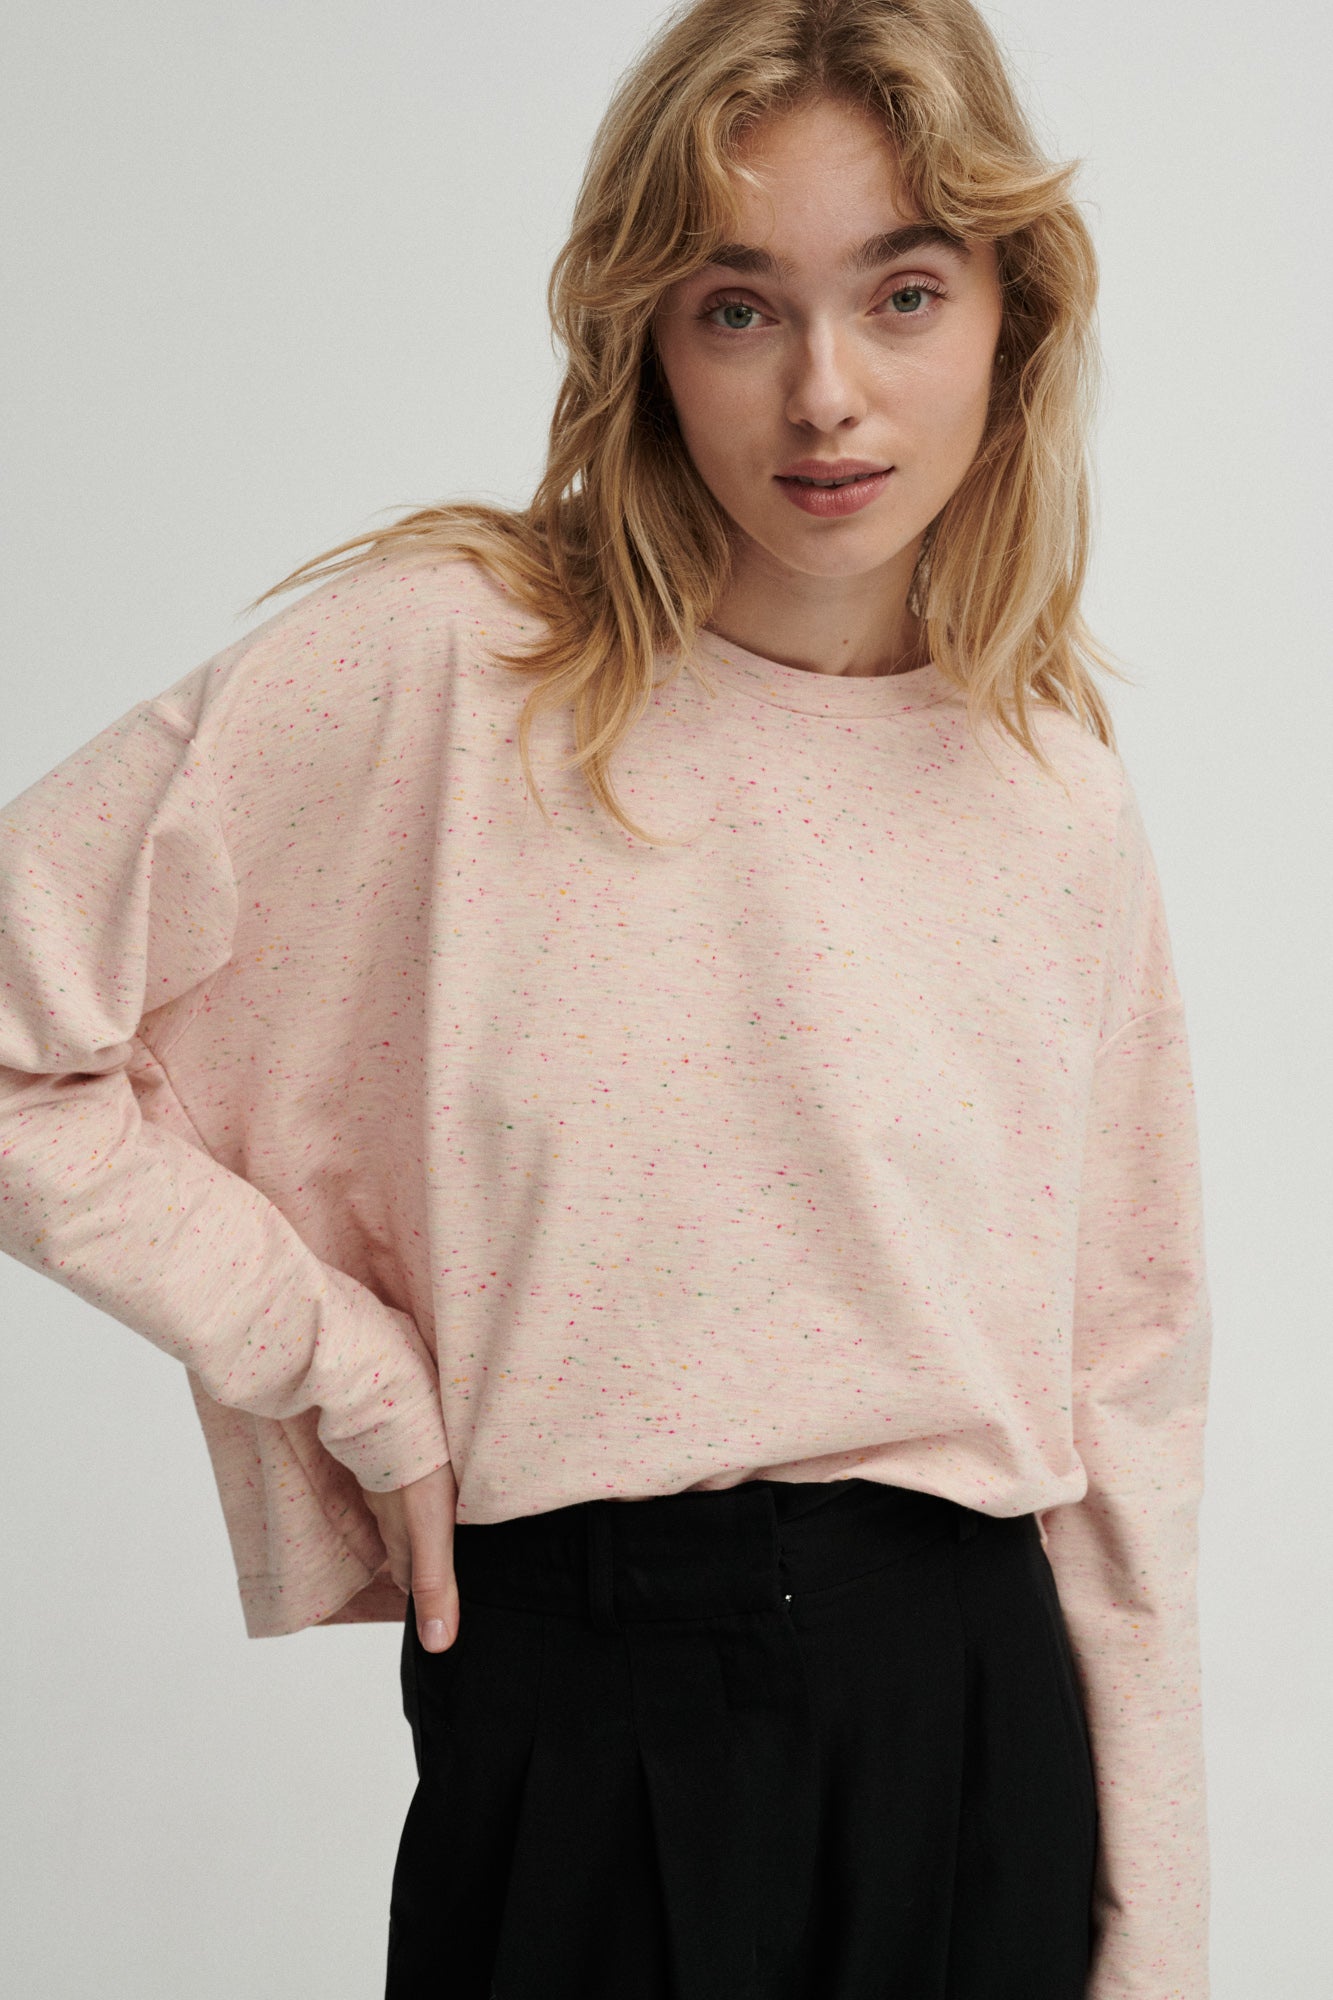 Sweatshirt in organic cotton / 14 / 04 / pink sprinkles